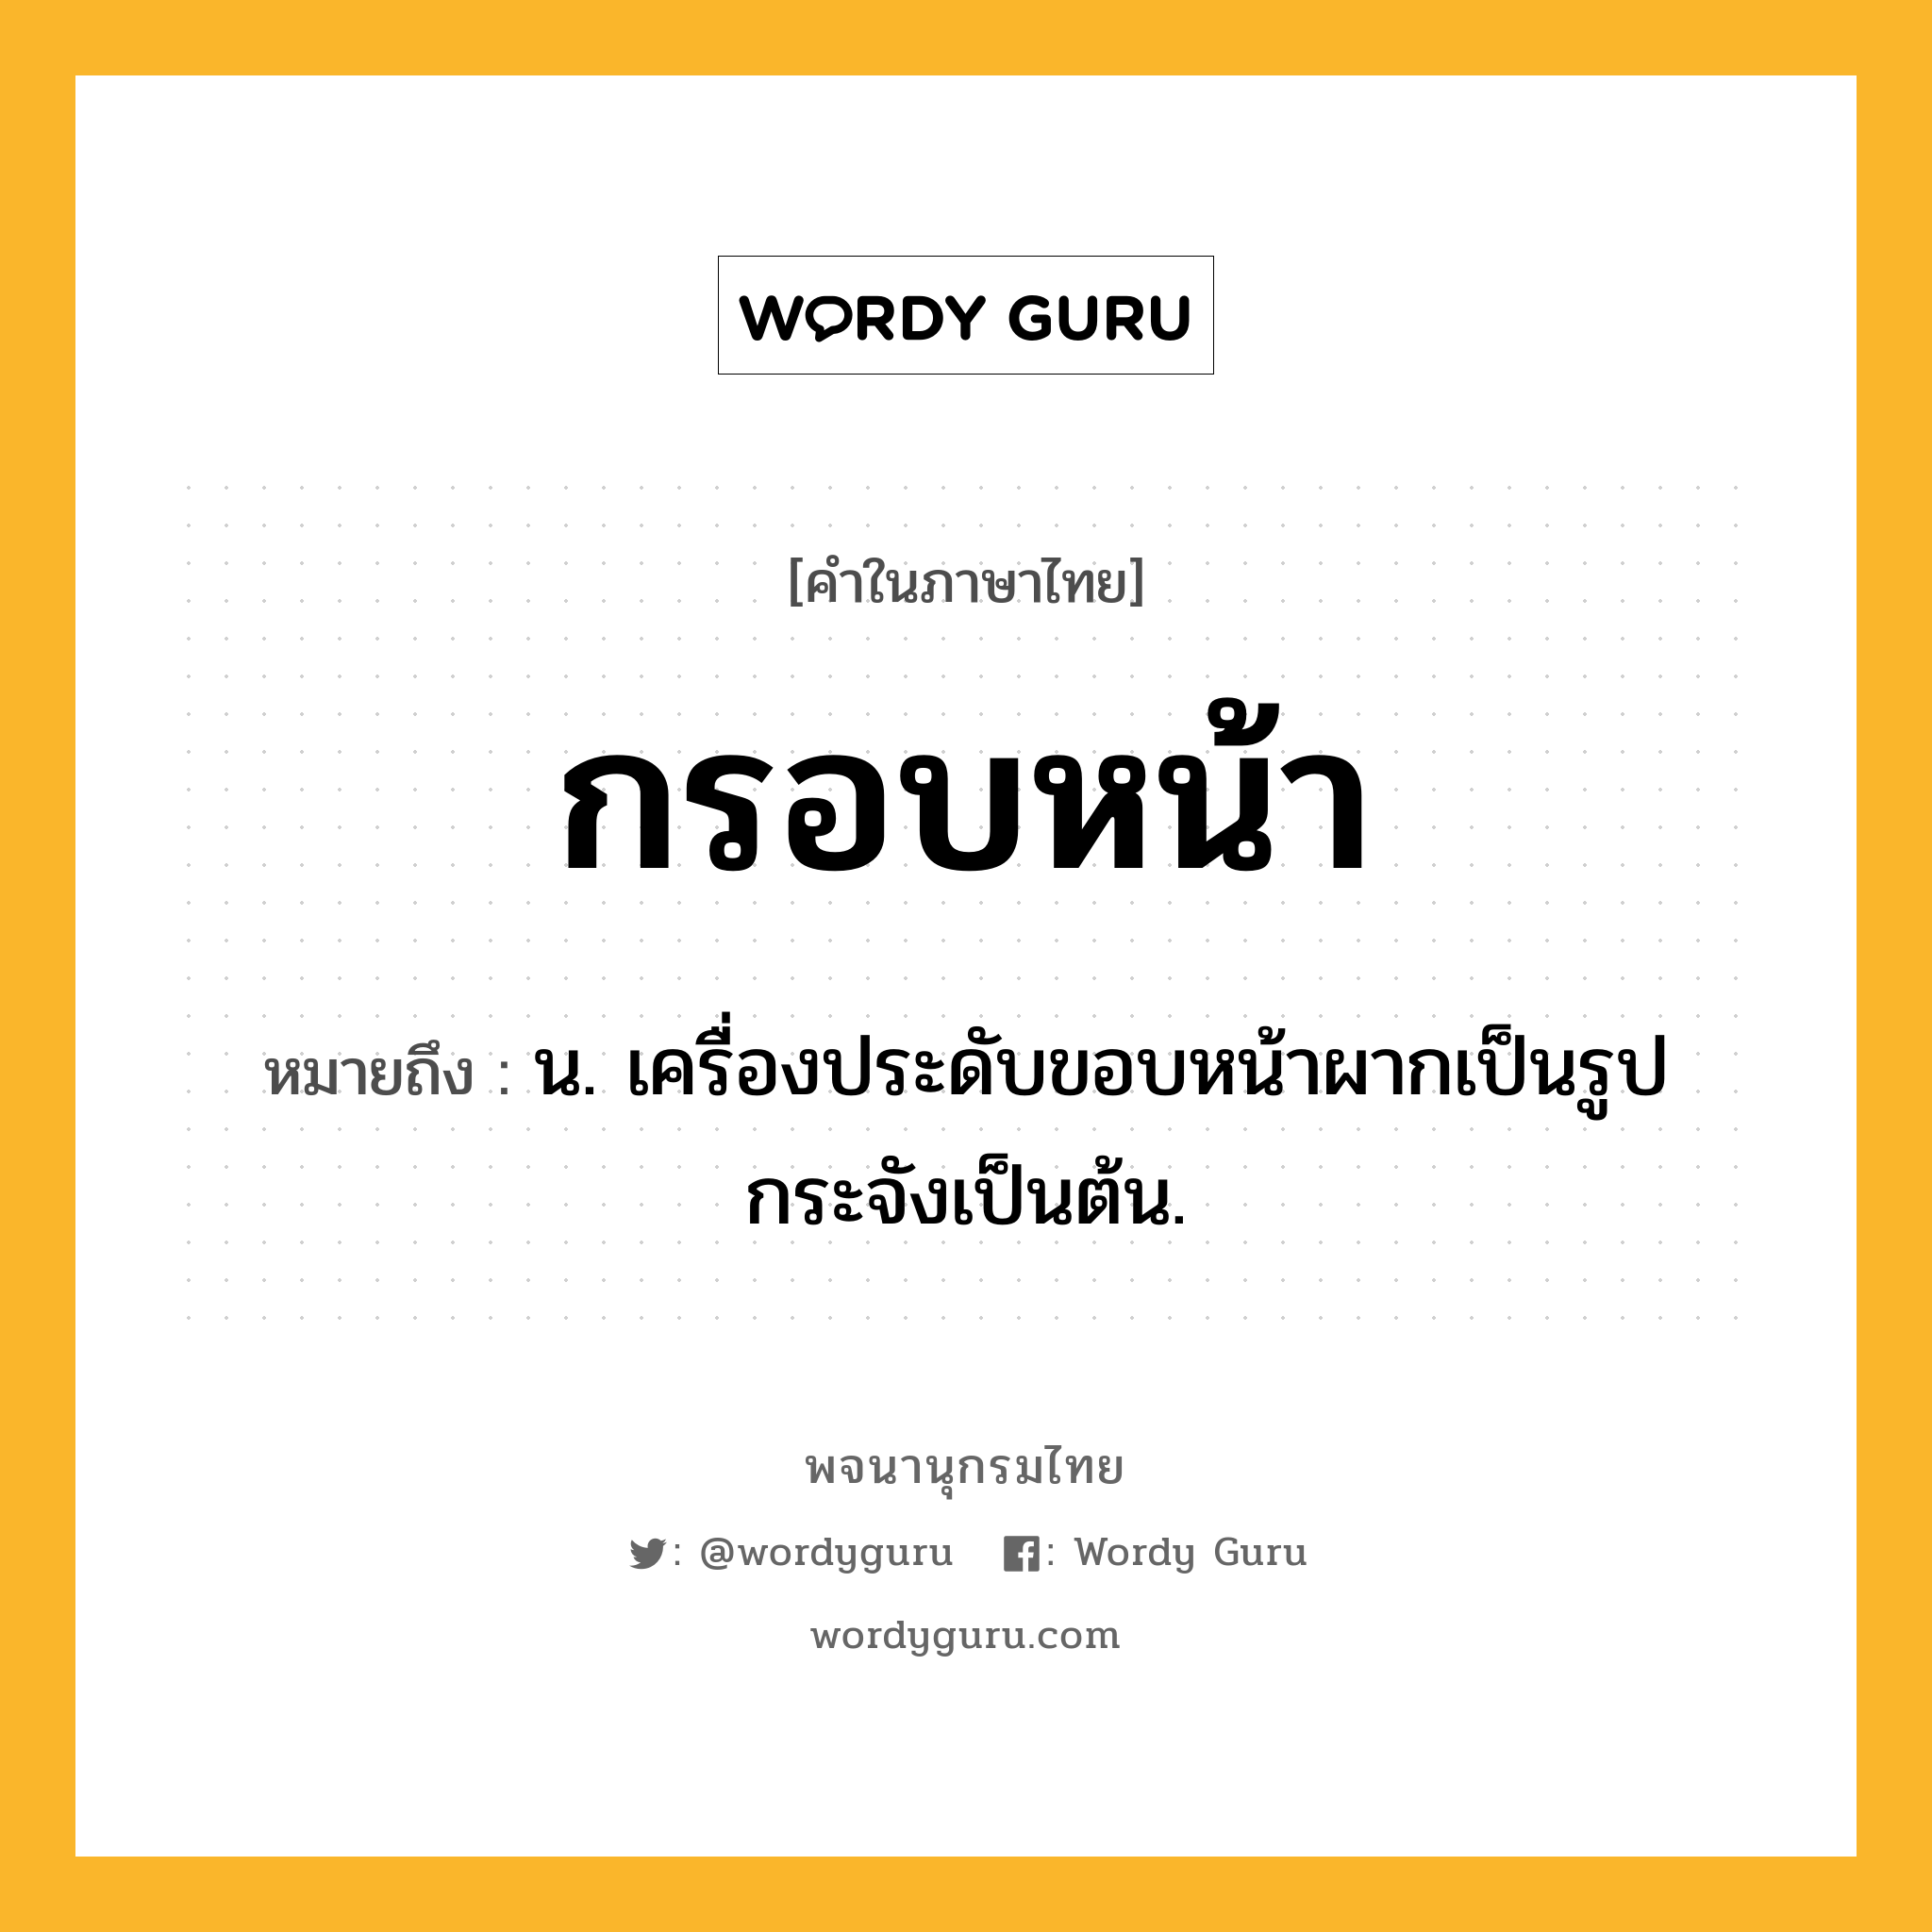 กรอบหน้า ความหมาย หมายถึงอะไร?, คำในภาษาไทย กรอบหน้า หมายถึง น. เครื่องประดับขอบหน้าผากเป็นรูปกระจังเป็นต้น.